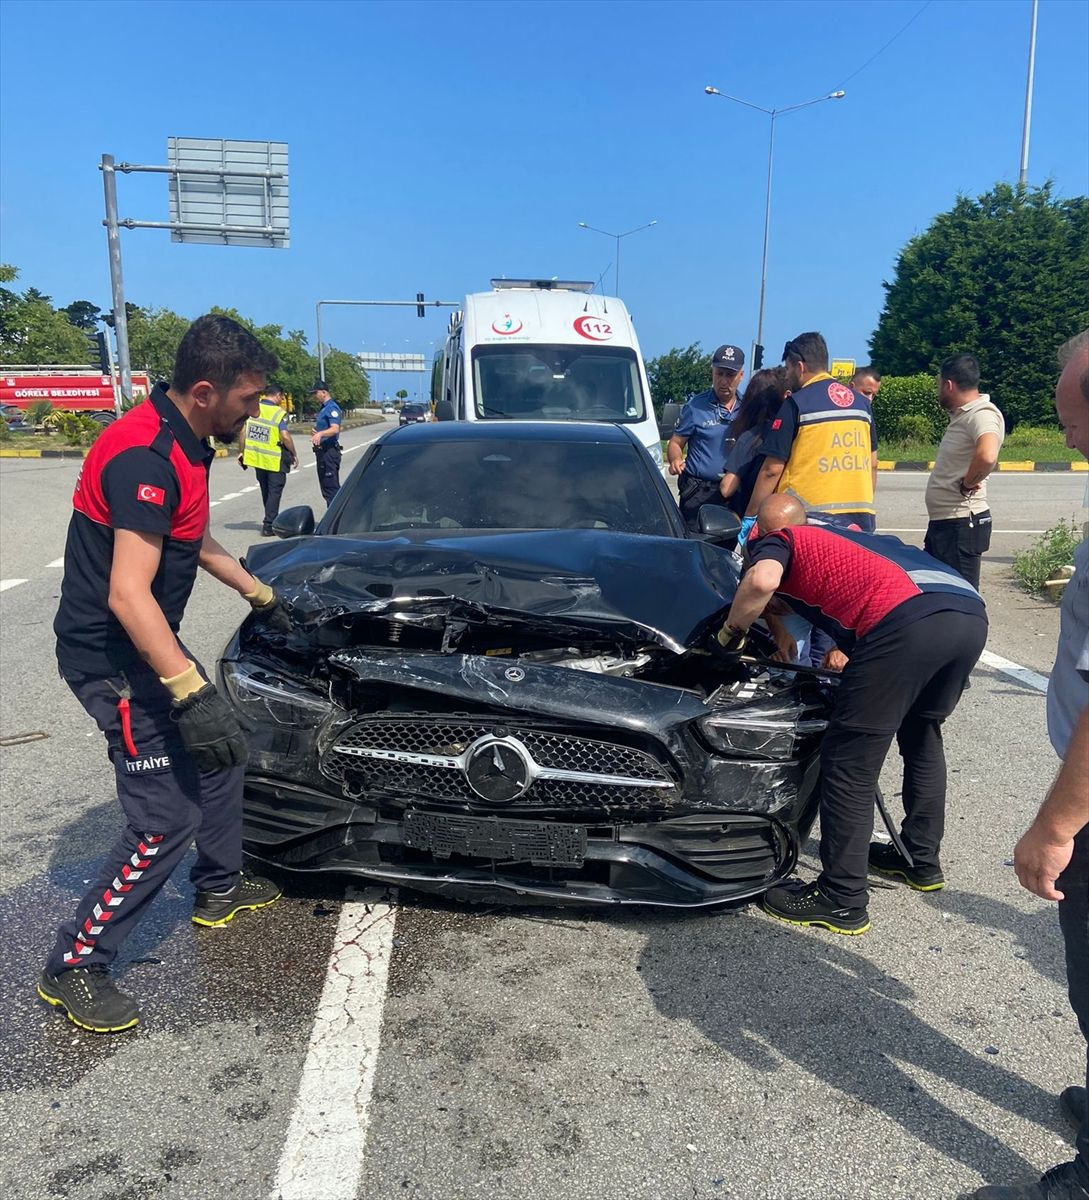 Galatasaray'ın milli futbolcusu kaza yaptı! Memleketi Rize'ye bayrama gidiyordu